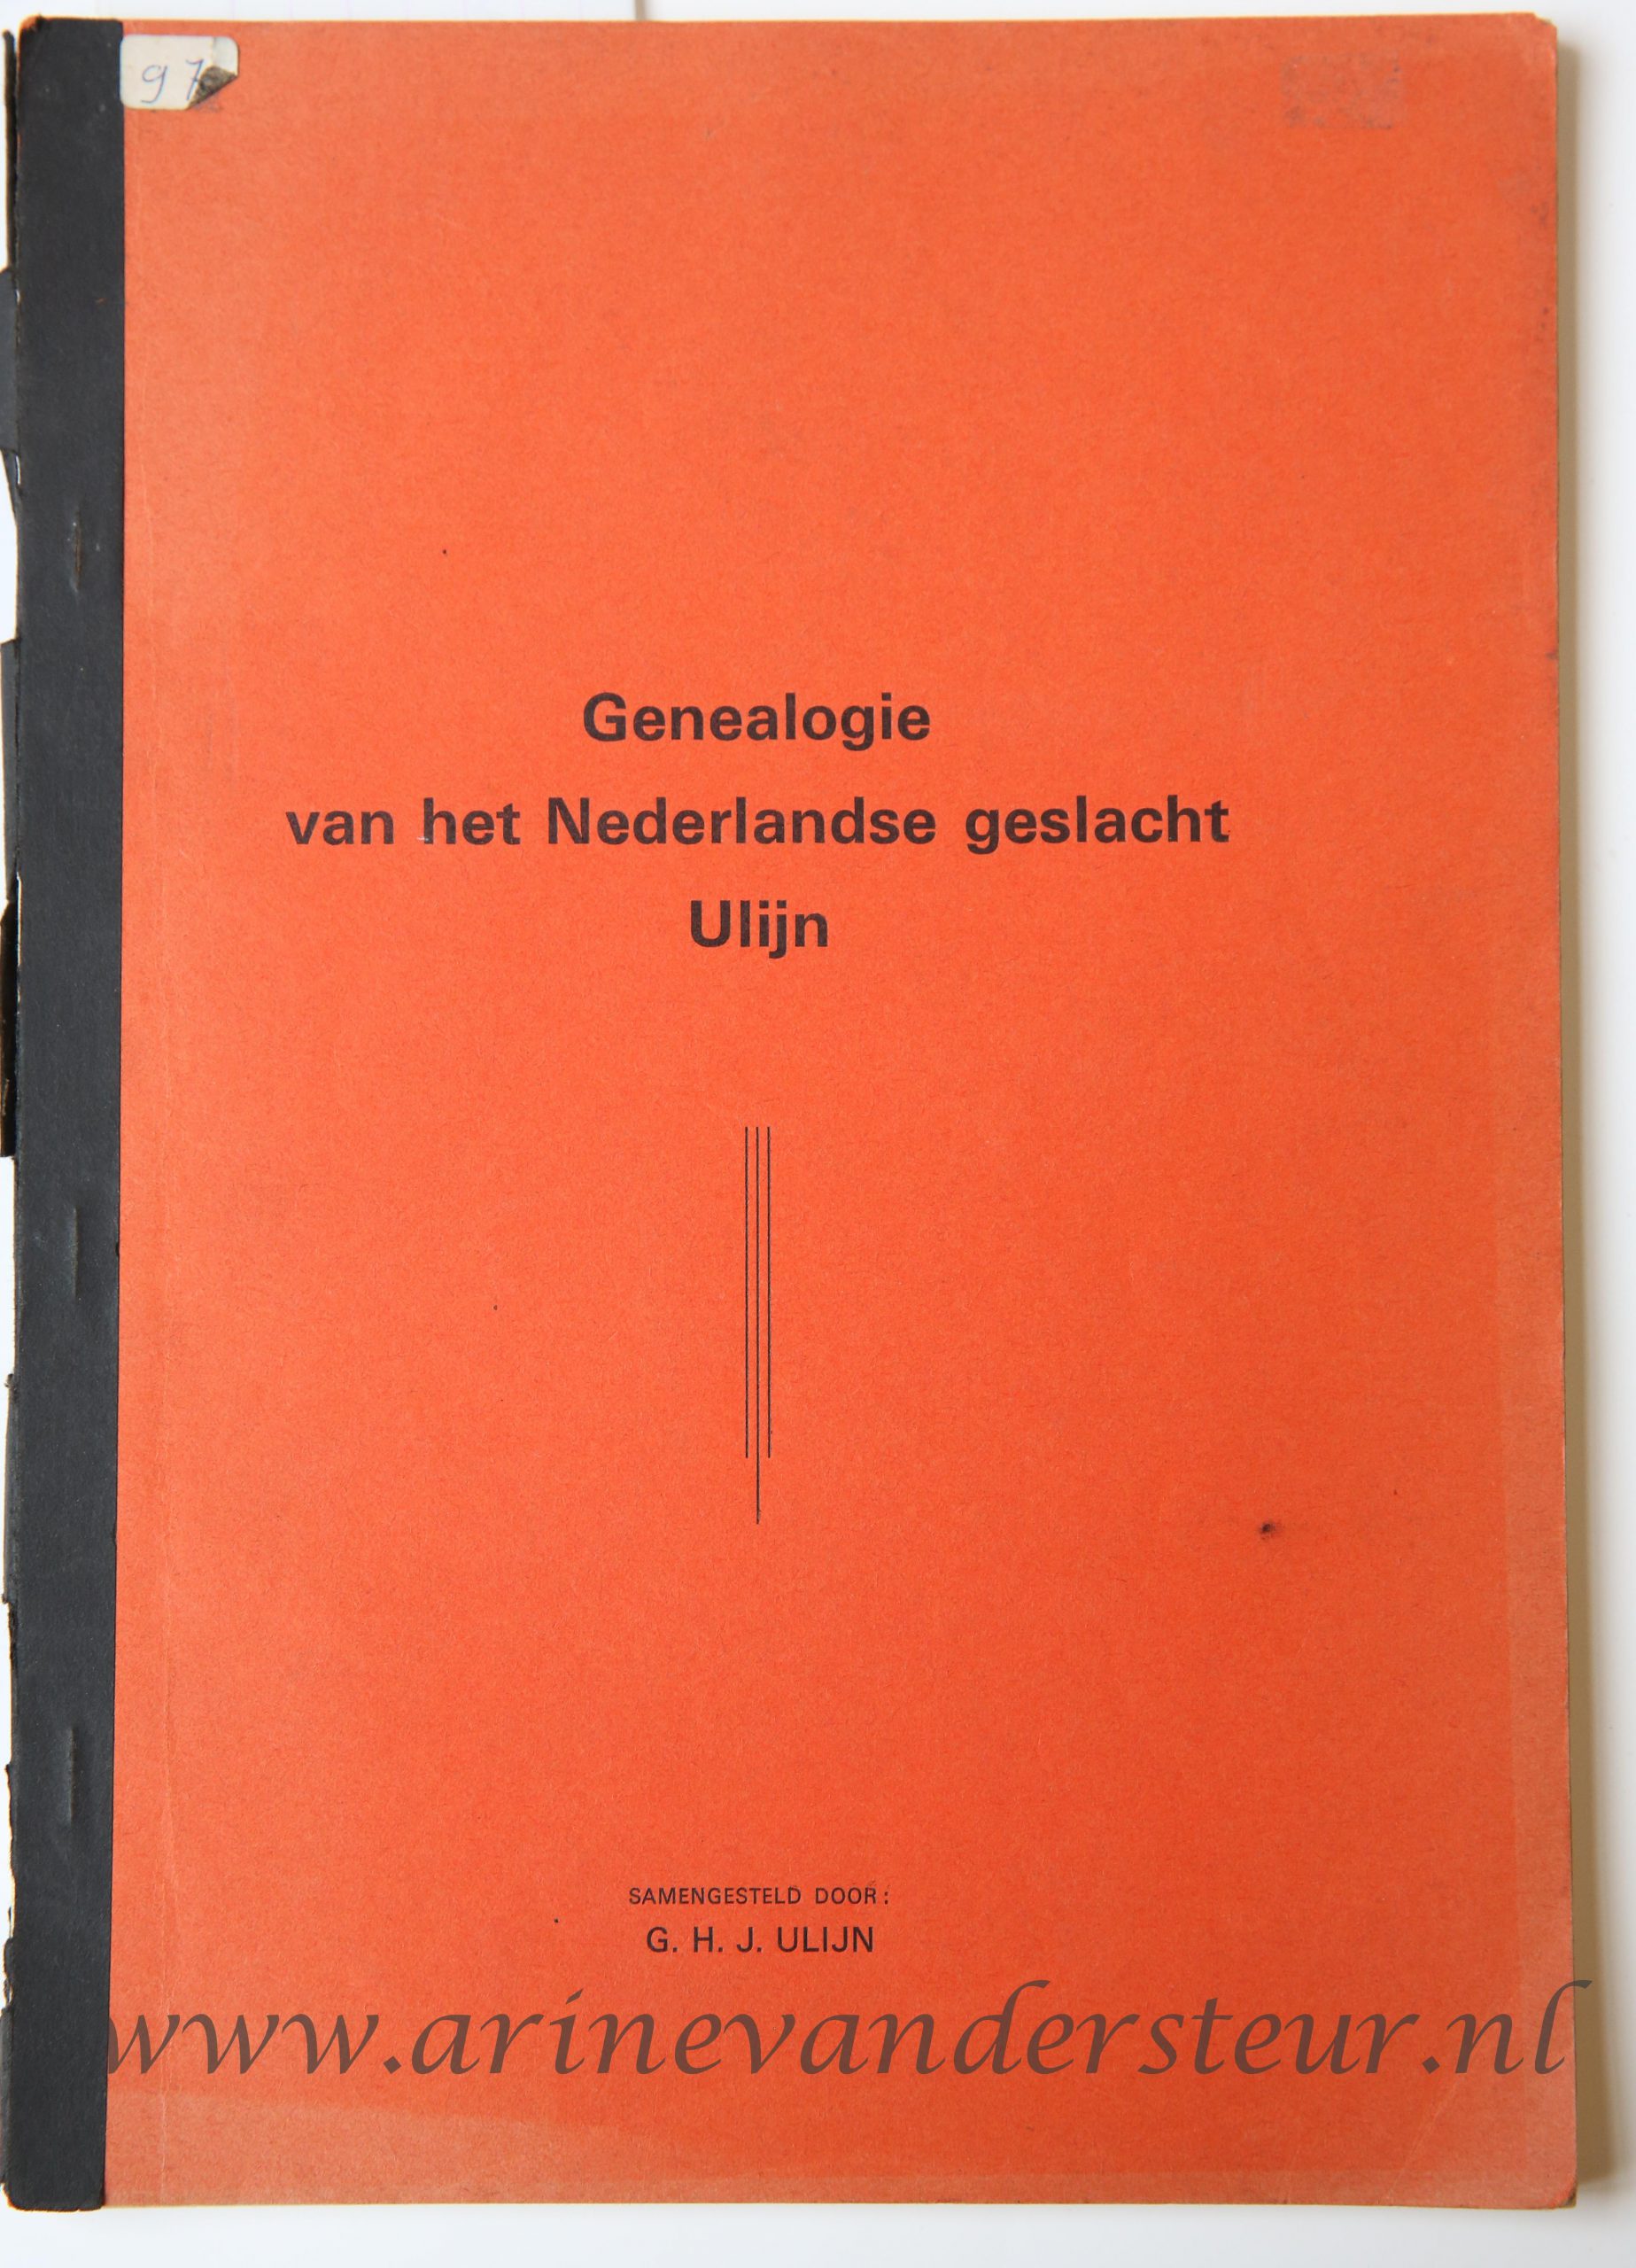 Genealogie van het Nederlandse geslacht Ulijn, Nijmegen, 1974, 51 pp. Illustrated. Geneology of the family Ulijn.